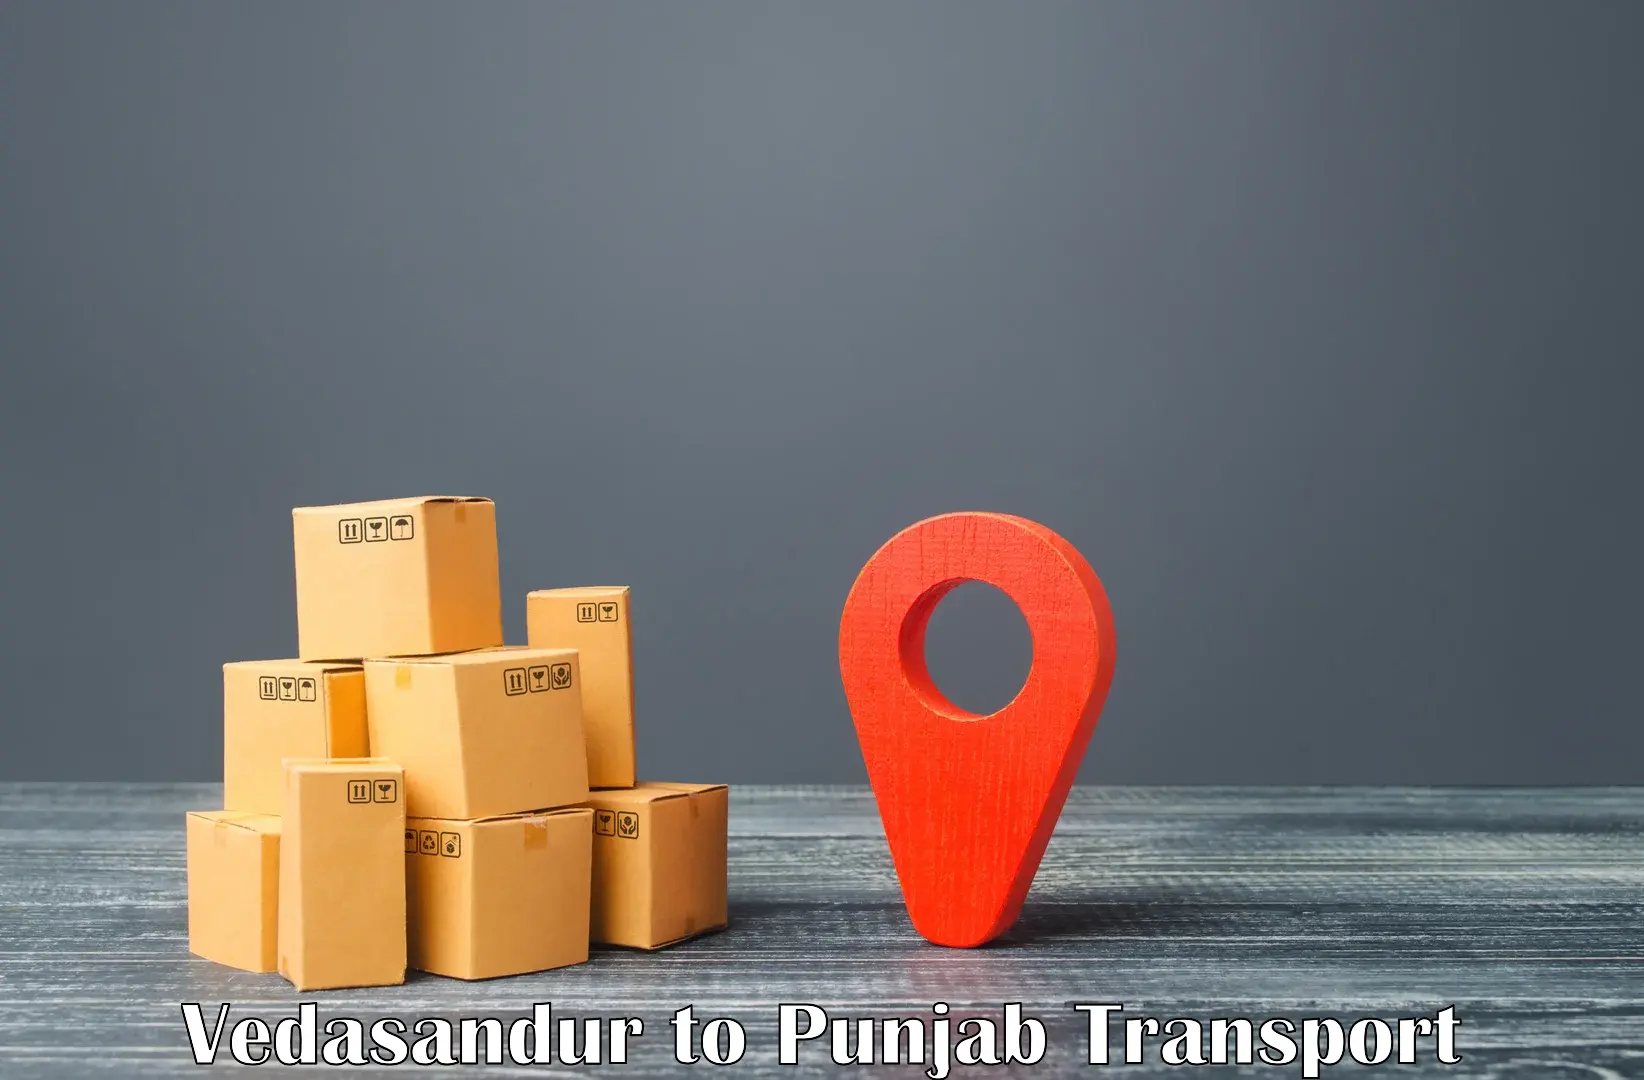 Online transport service Vedasandur to Garhshankar